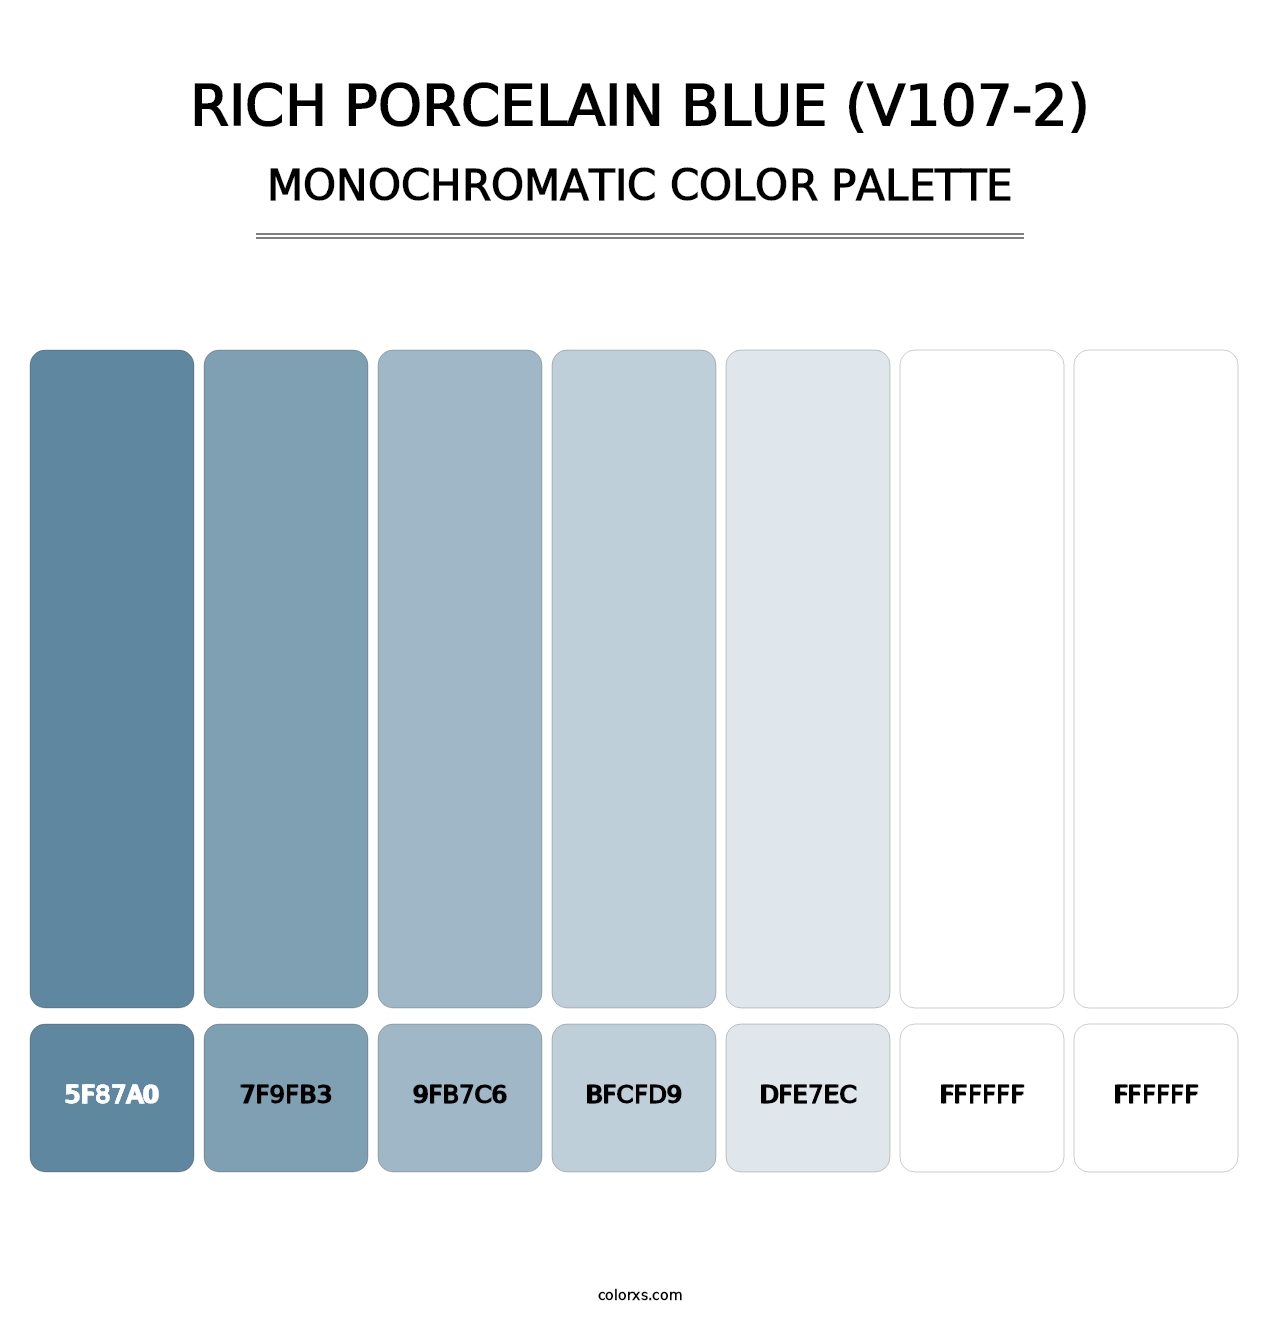 Rich Porcelain Blue (V107-2) - Monochromatic Color Palette